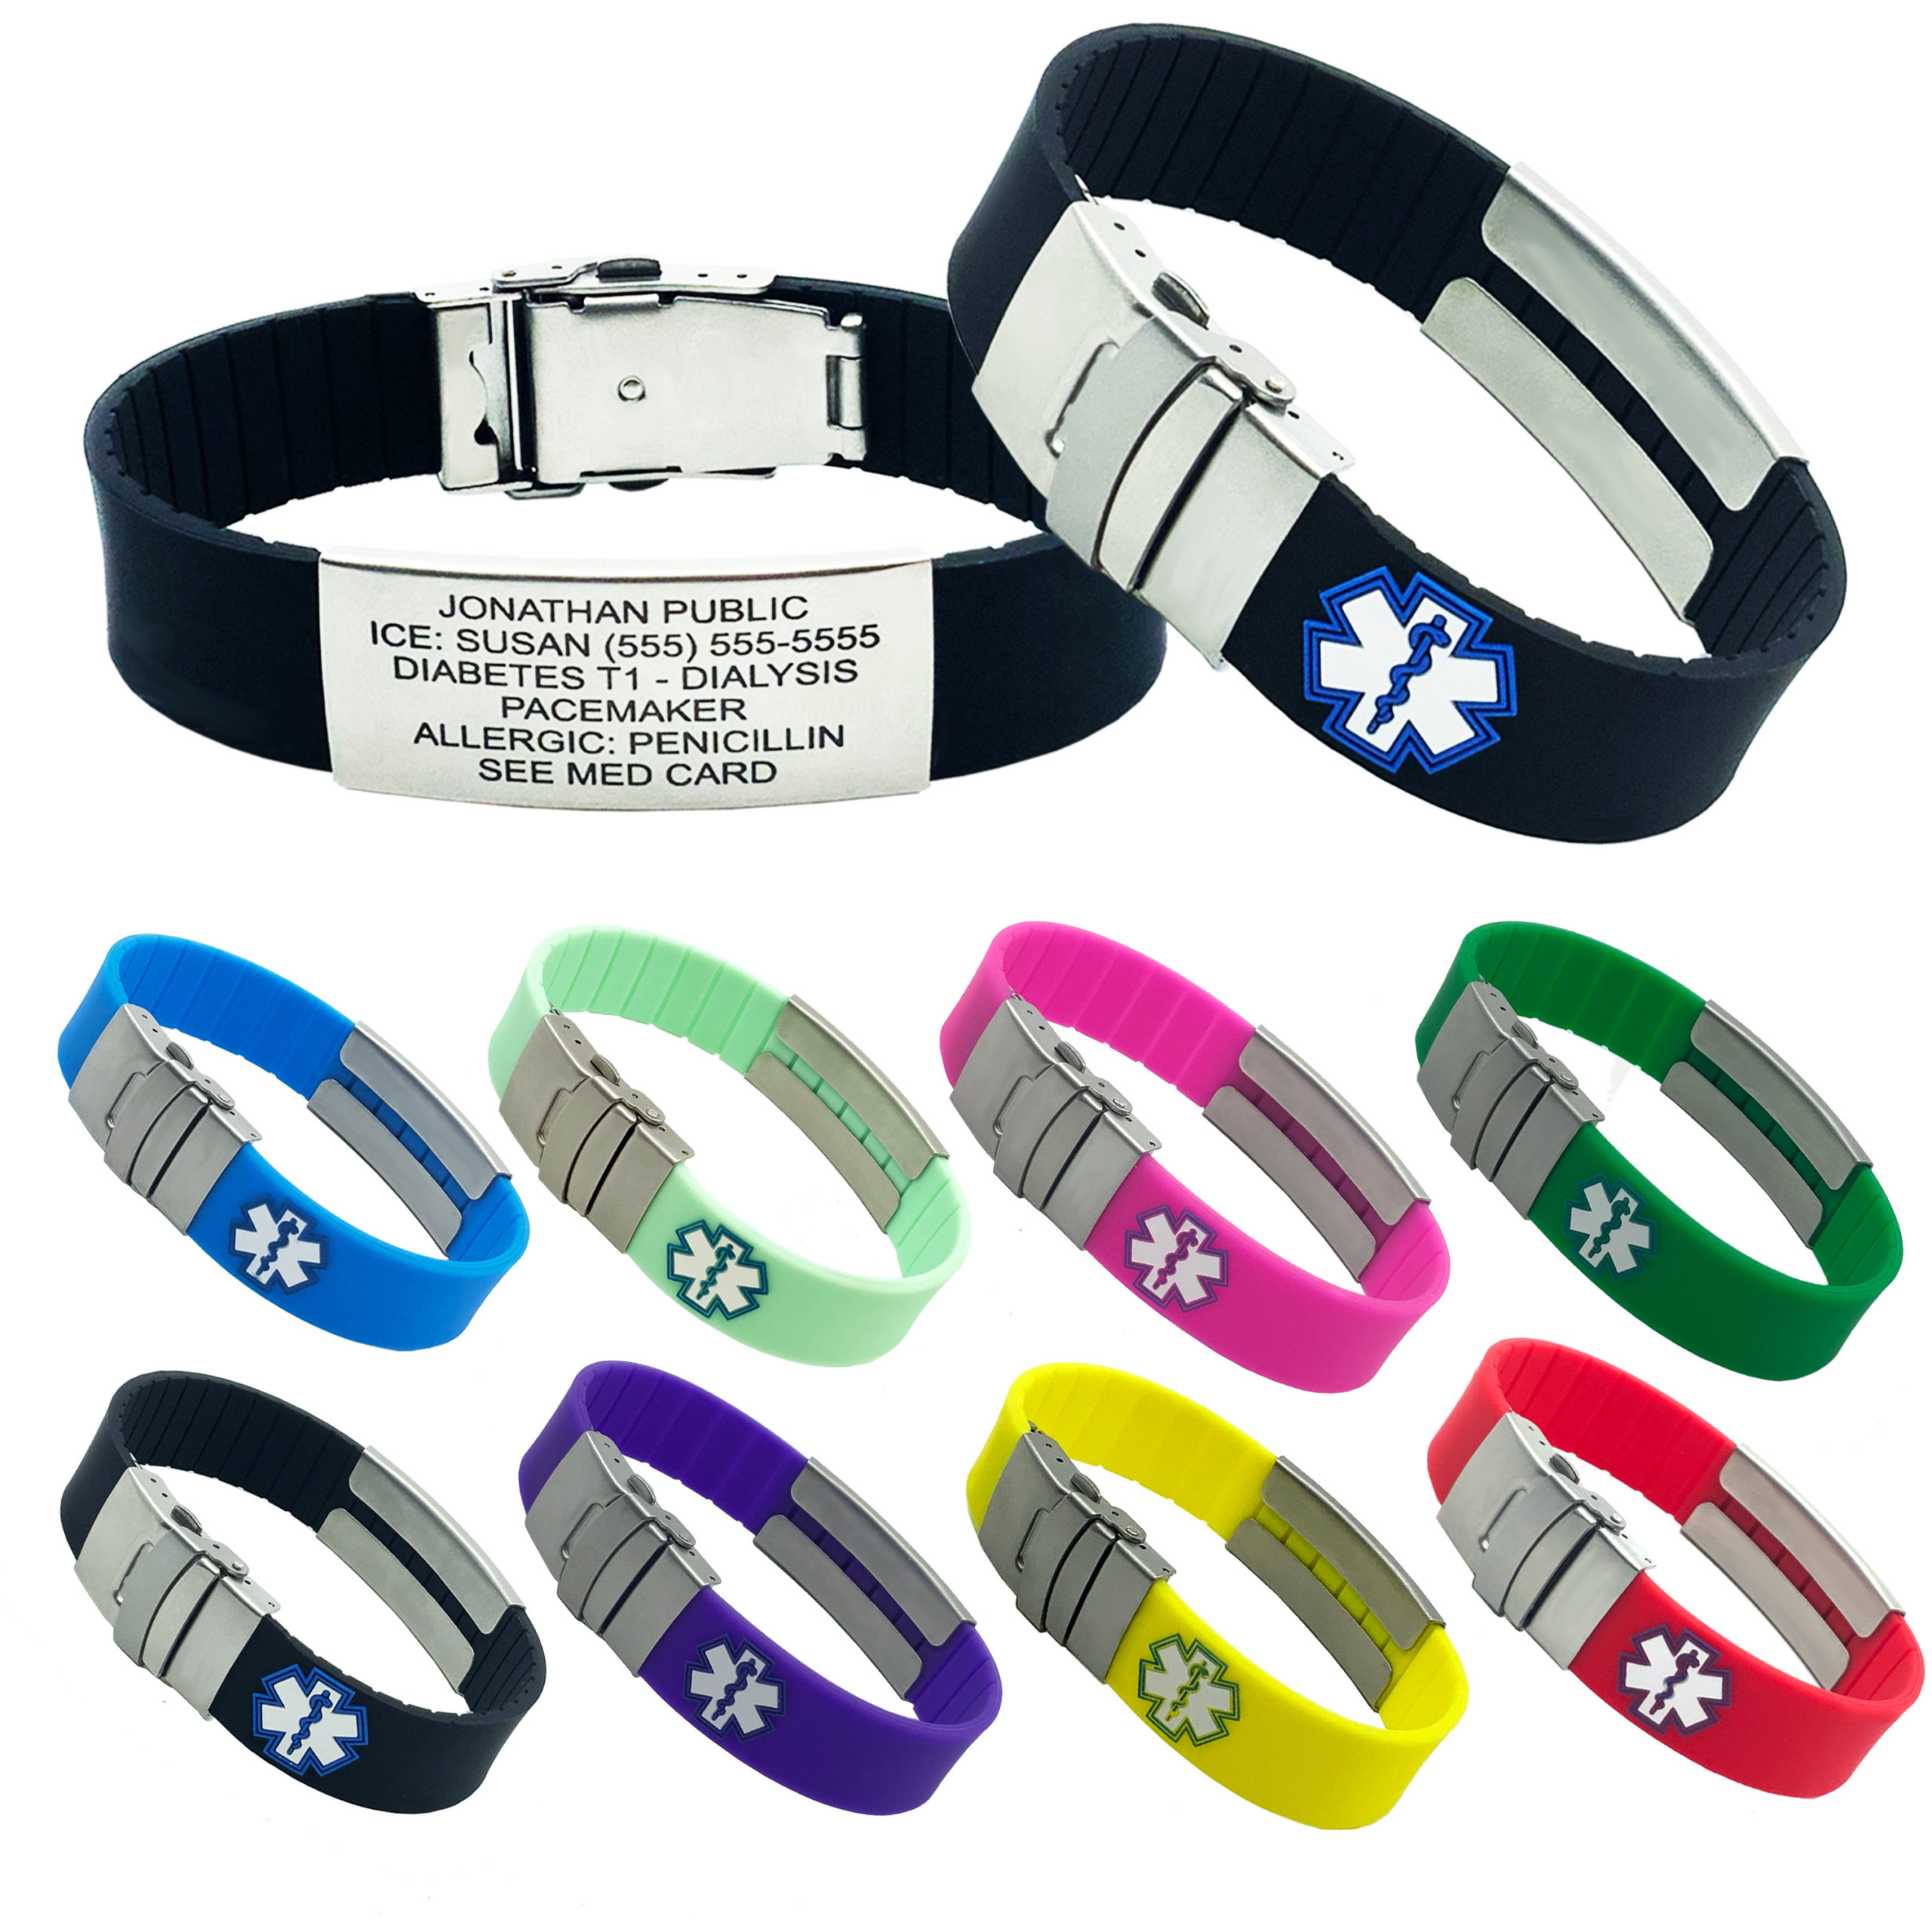 Kids Adjustable Medical Alert ID Bracelets ~ 5 Colors! 